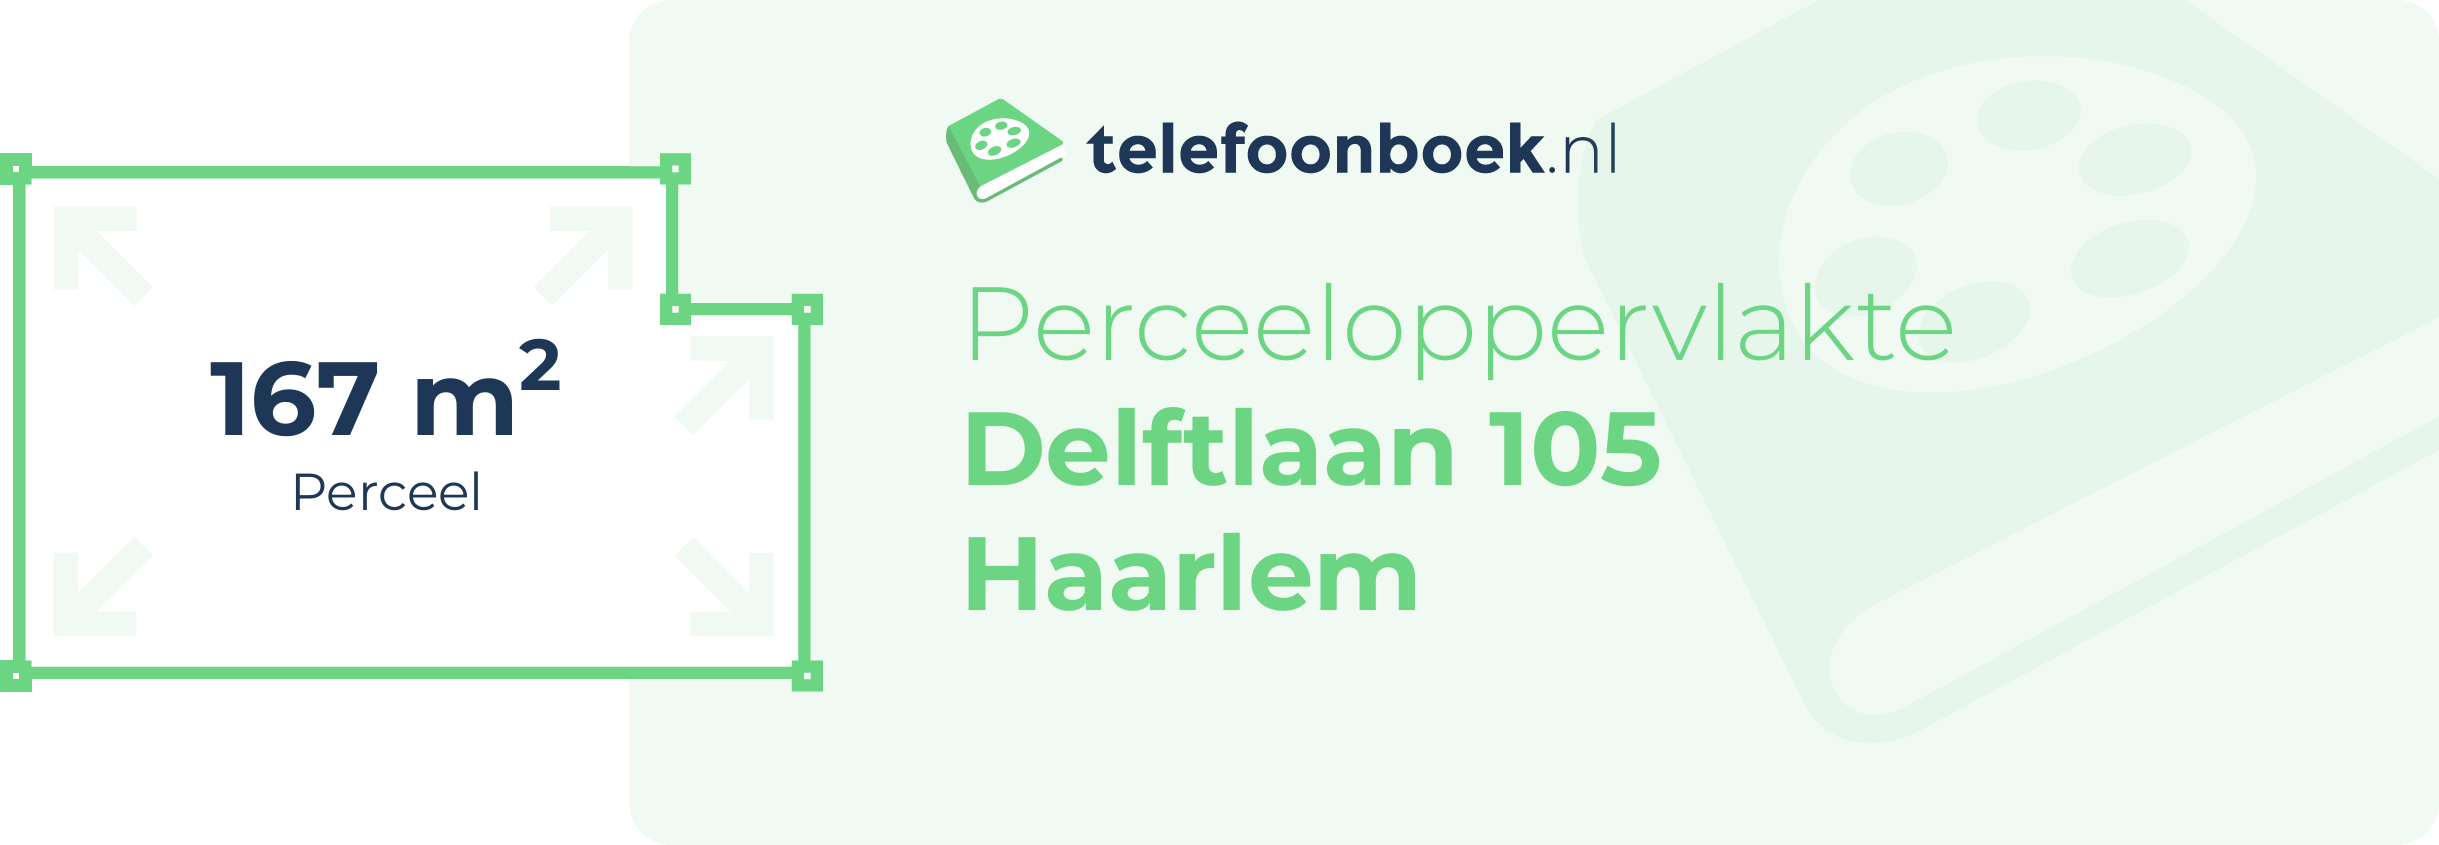 Perceeloppervlakte Delftlaan 105 Haarlem